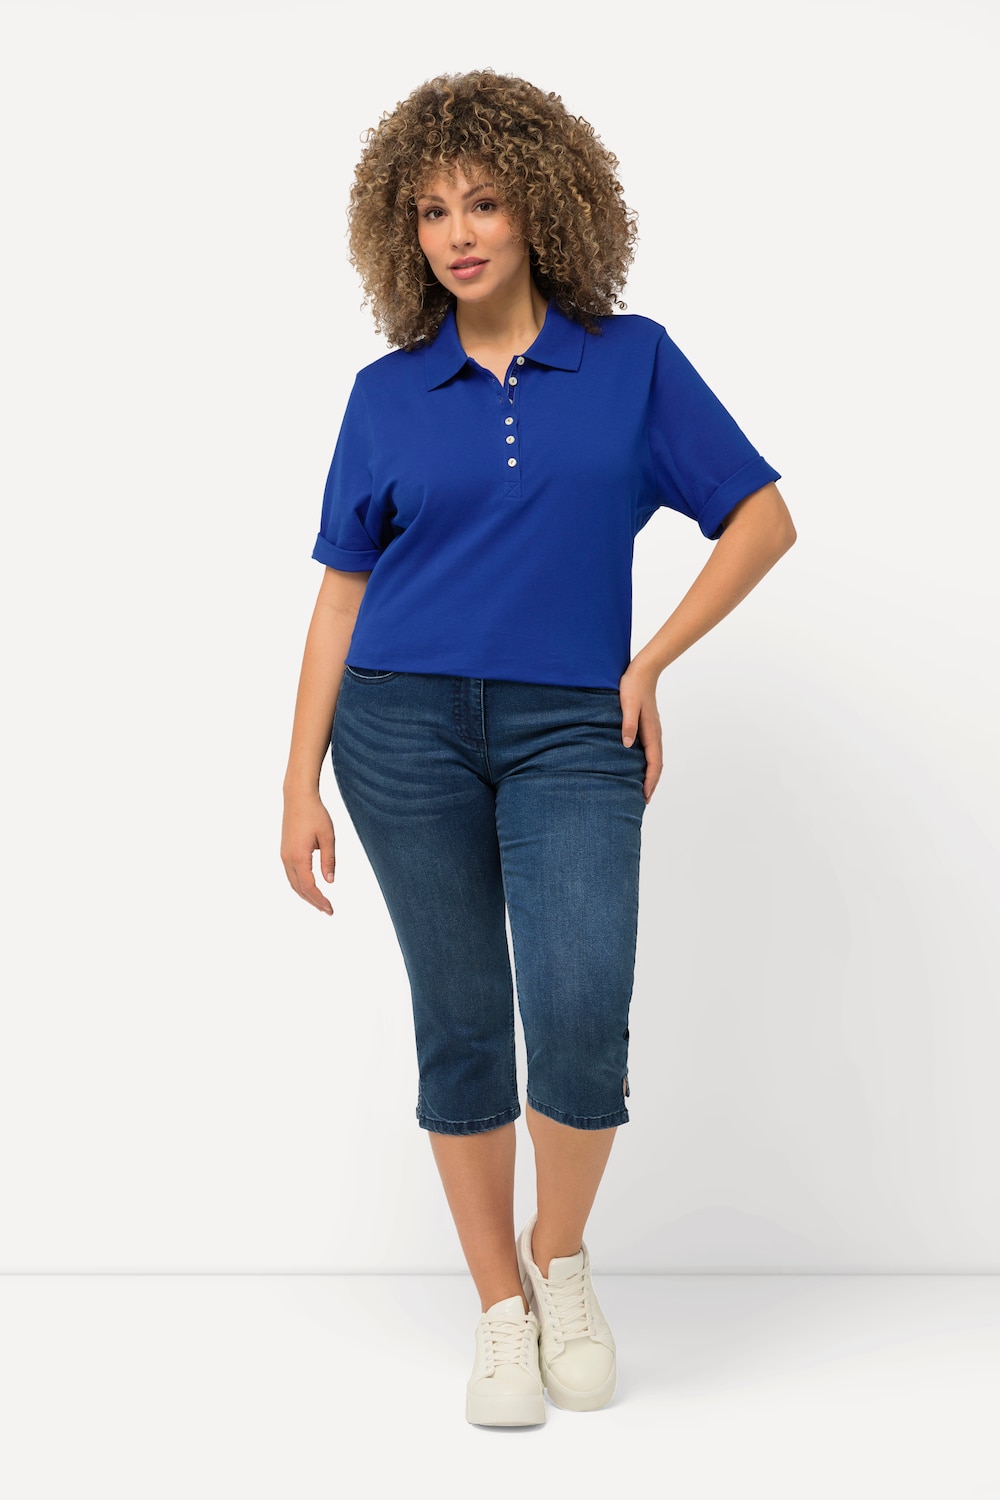 Große Größen Capri Jeans Sarah, Damen, blau, Größe: 54, Baumwolle/Polyester/Viskose, Ulla Popken von Ulla Popken